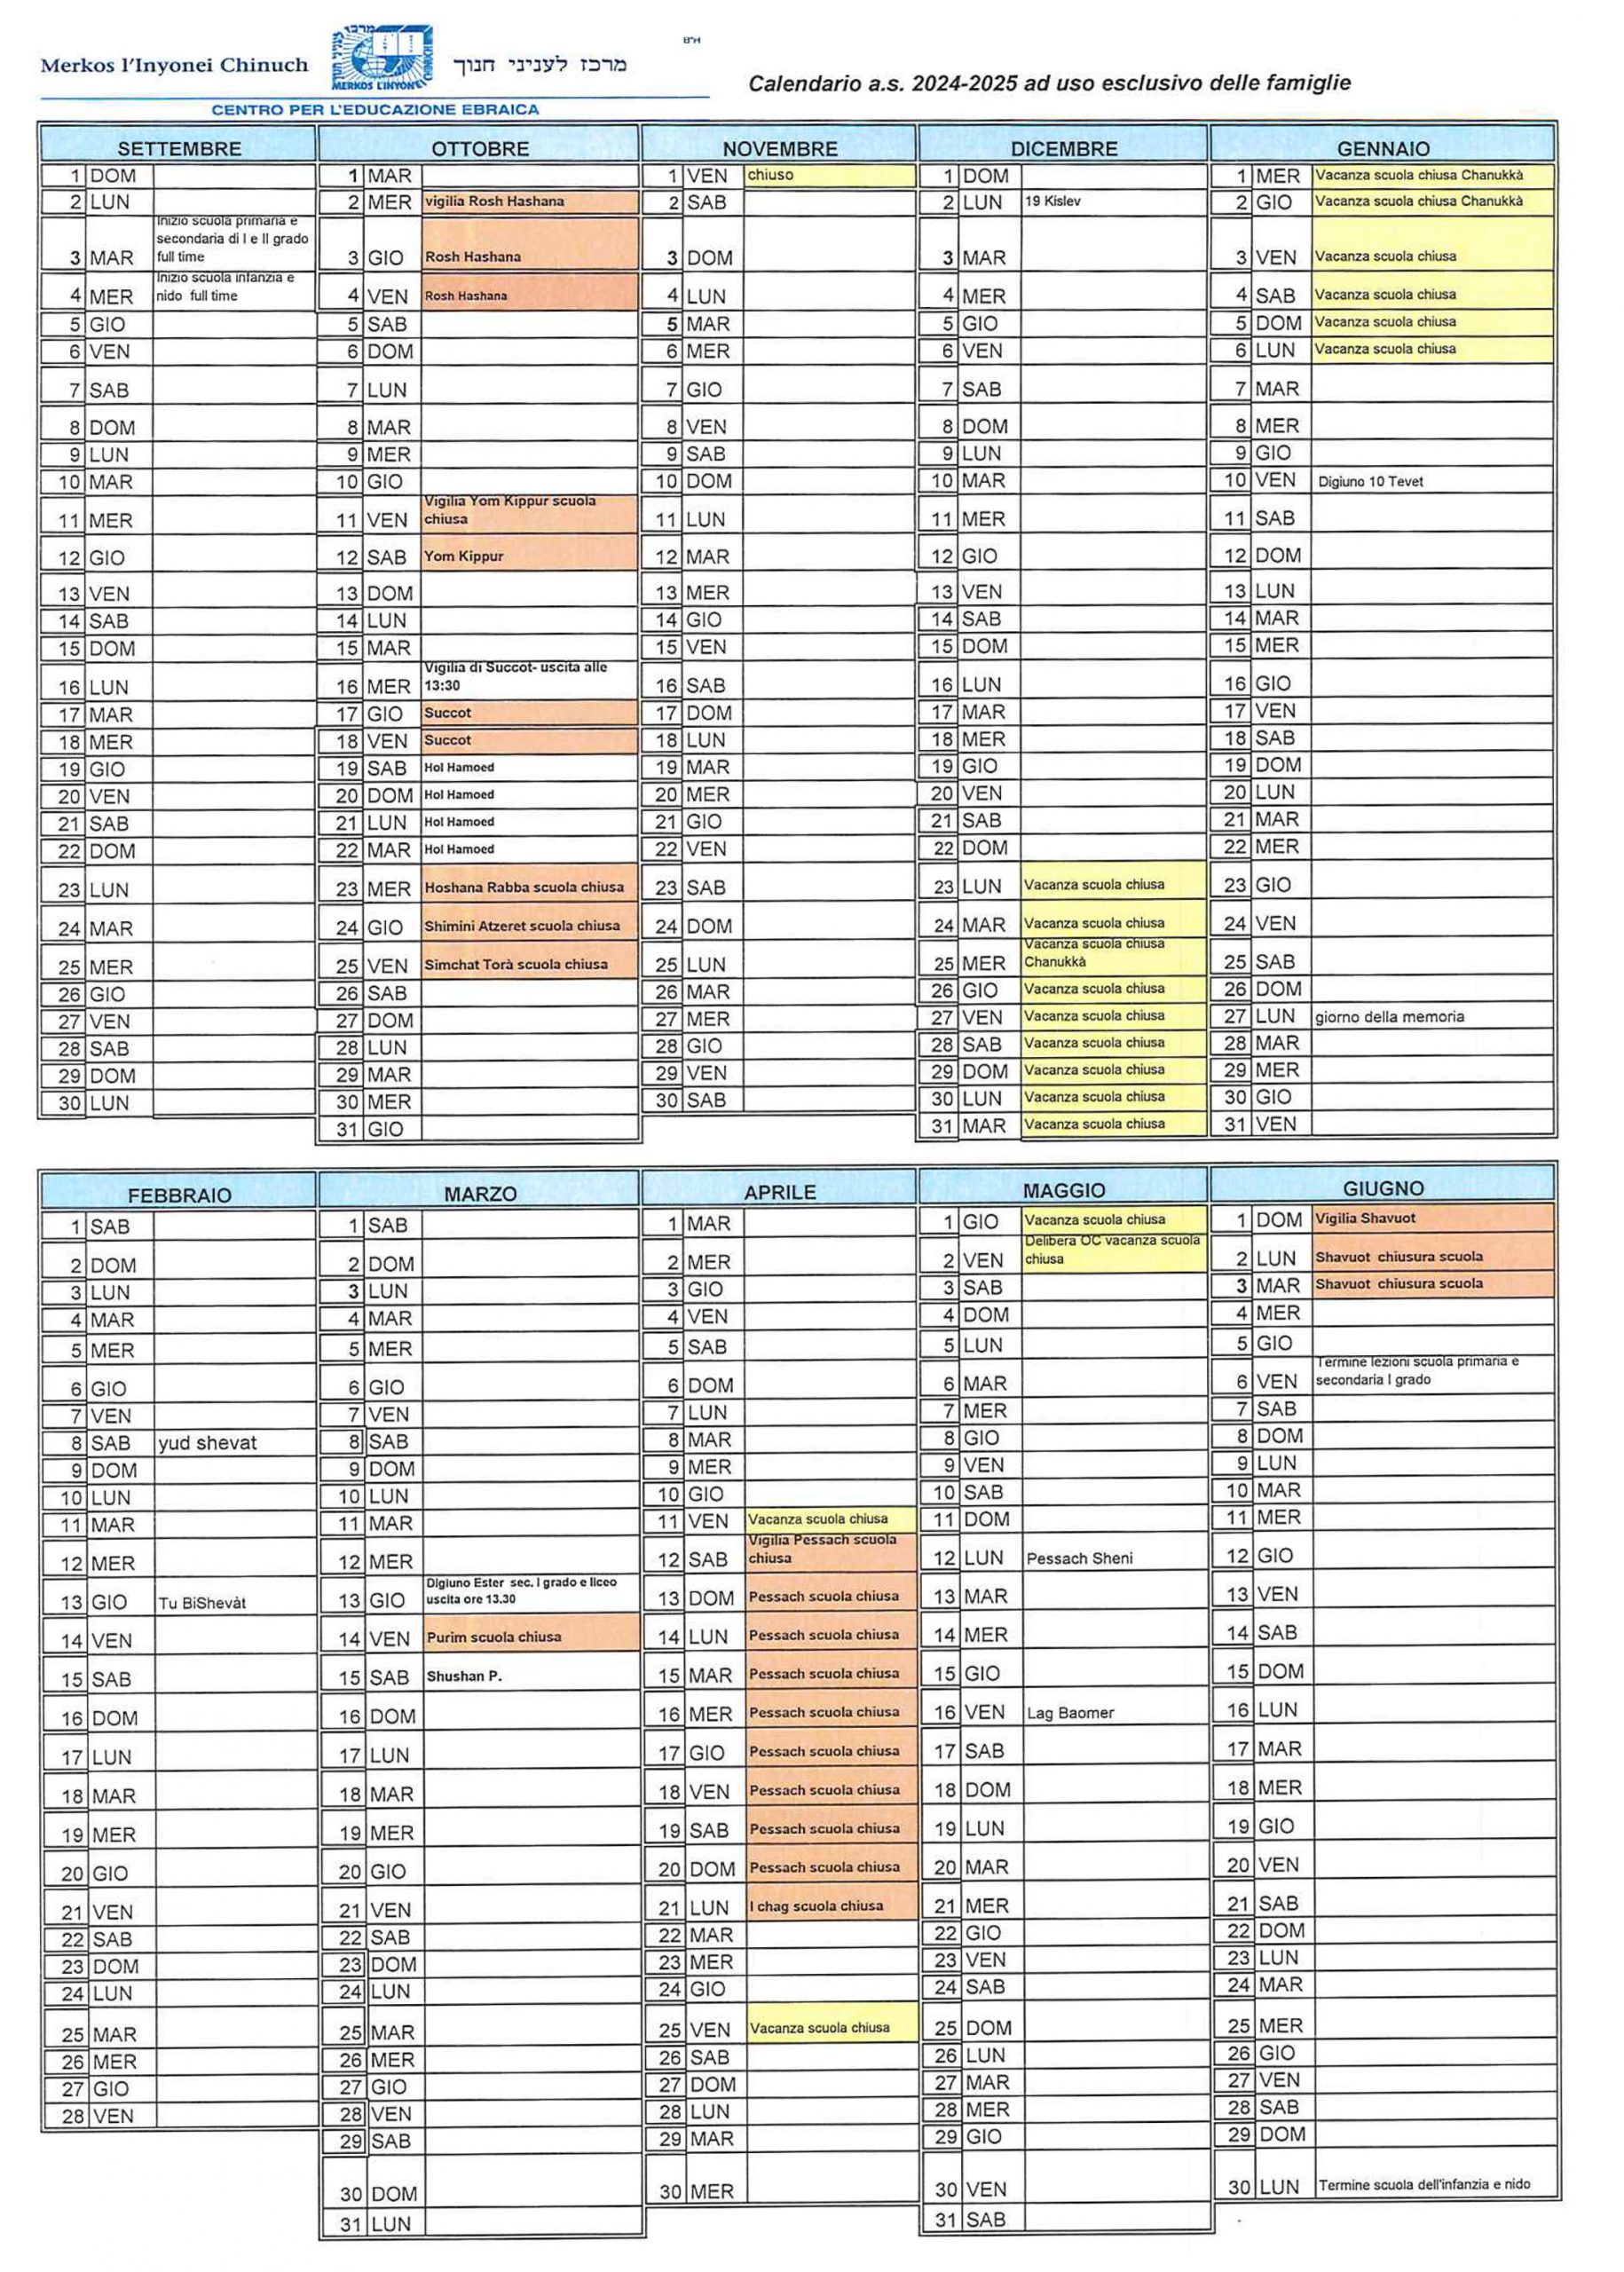 Calendario scolastico 2024-2025 Merkos